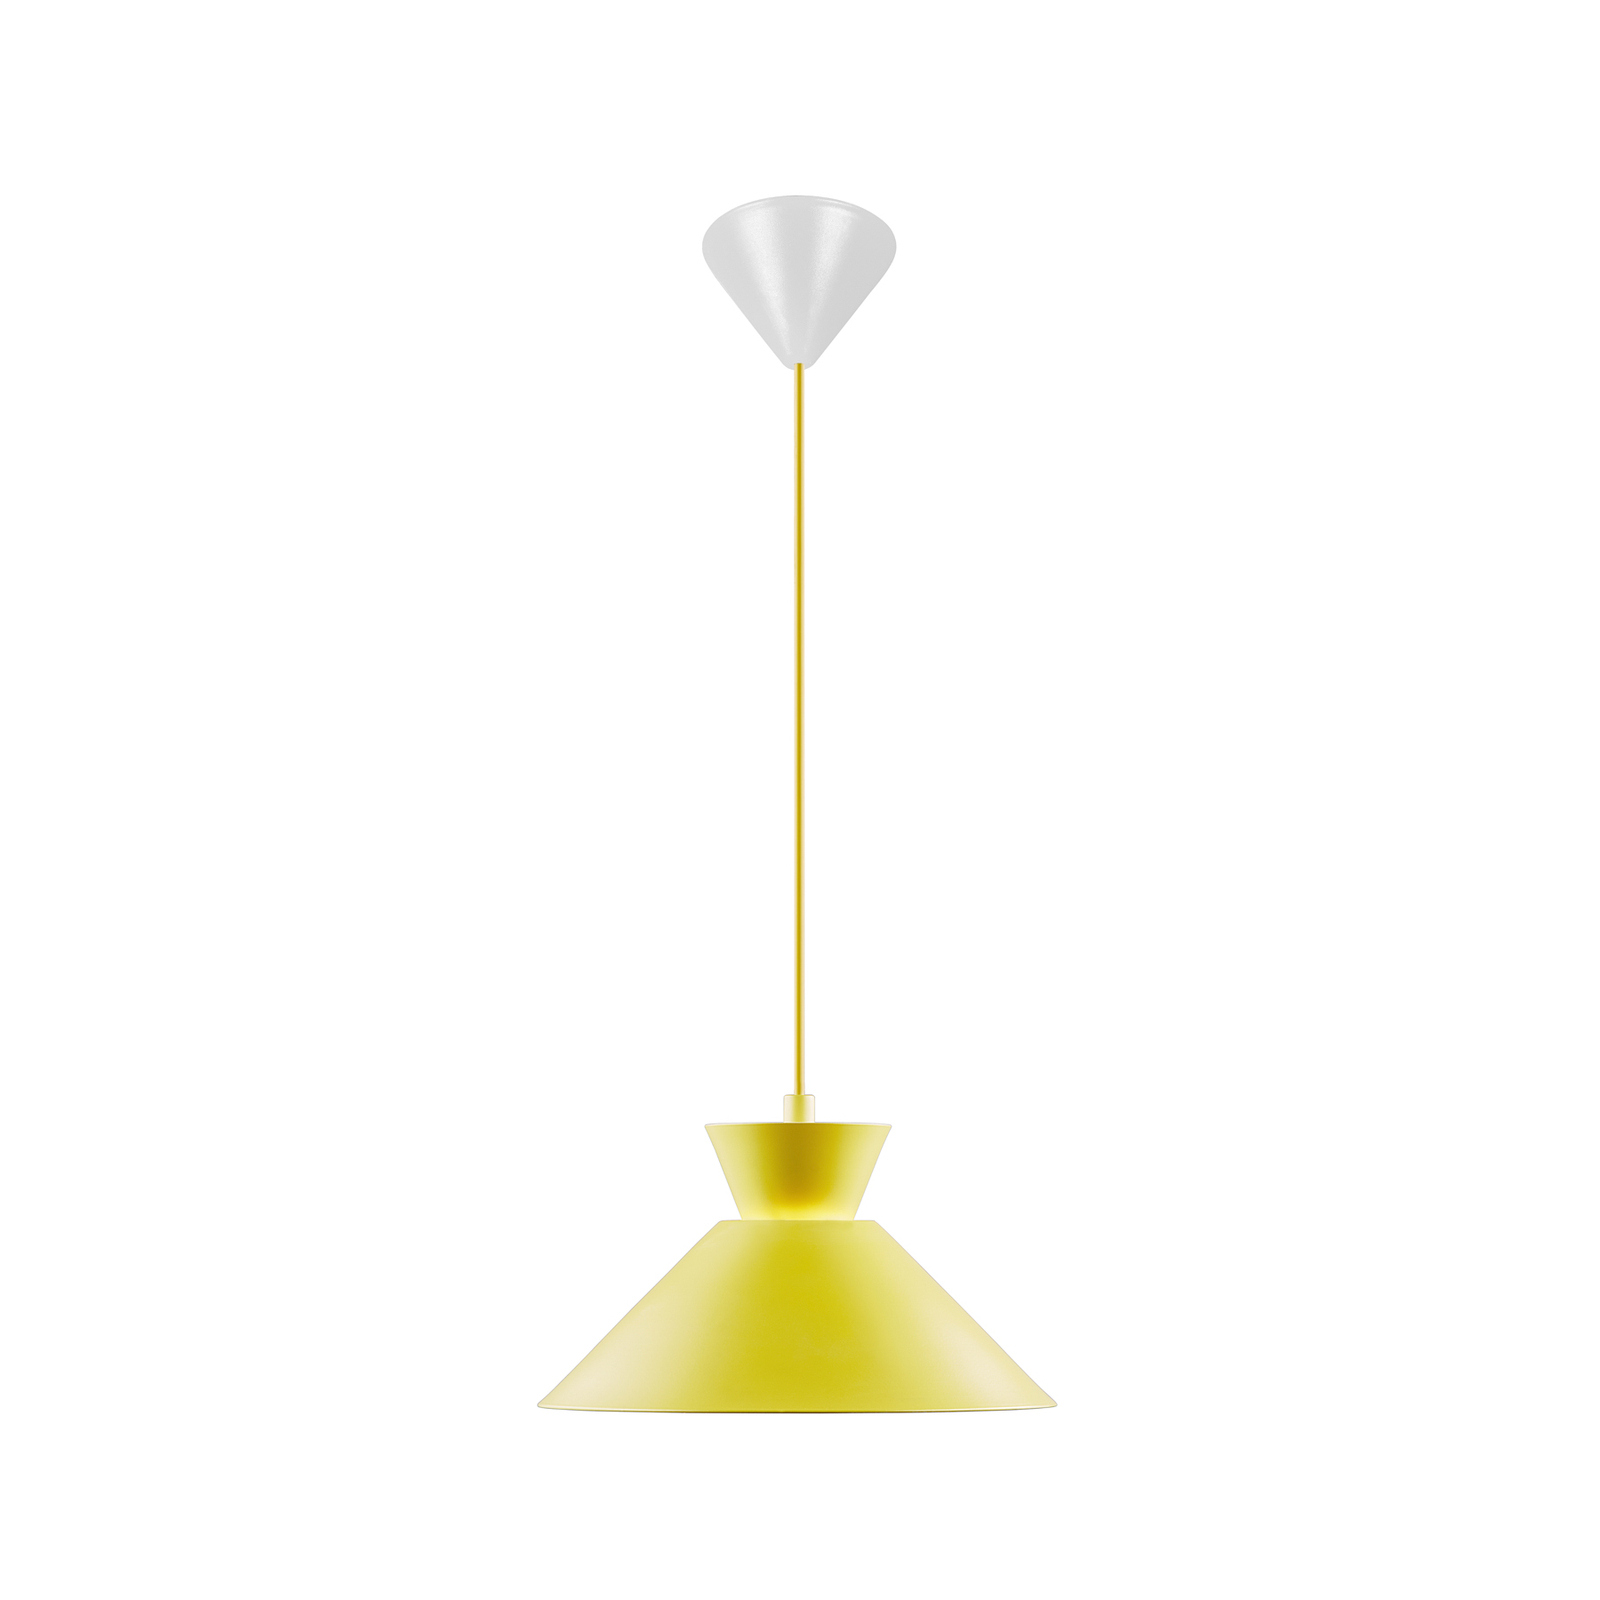 Lampă suspendată cu cadran cu abajur din metal, galben, Ø 25 cm